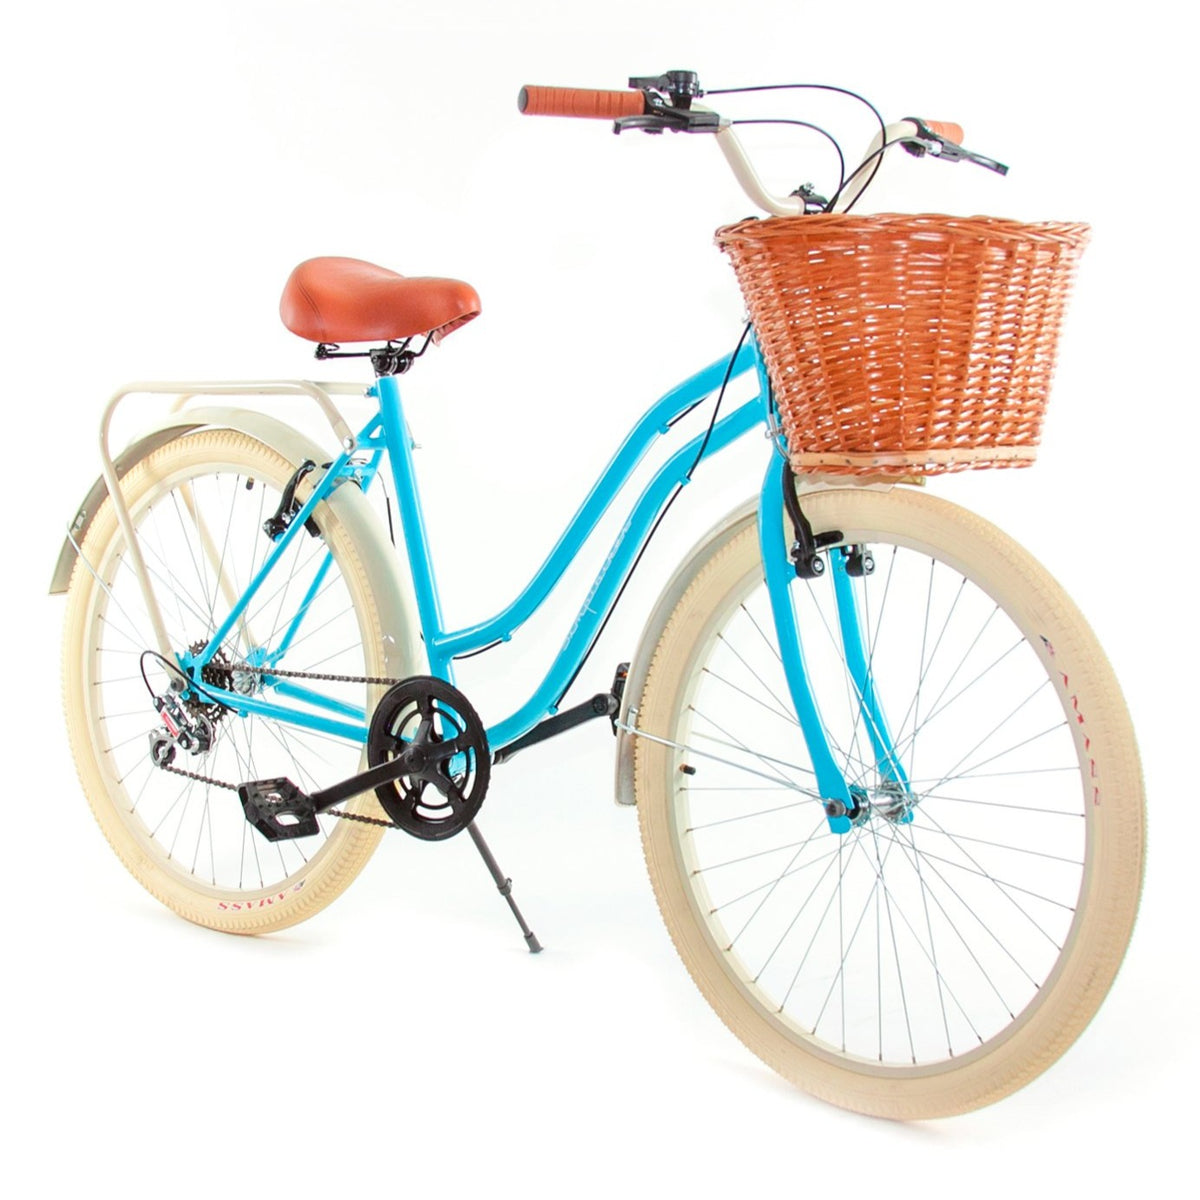 Bicicleta Vintage Dama  Rosa y Menta Canasta Tubular. – Bicicletas Vintage